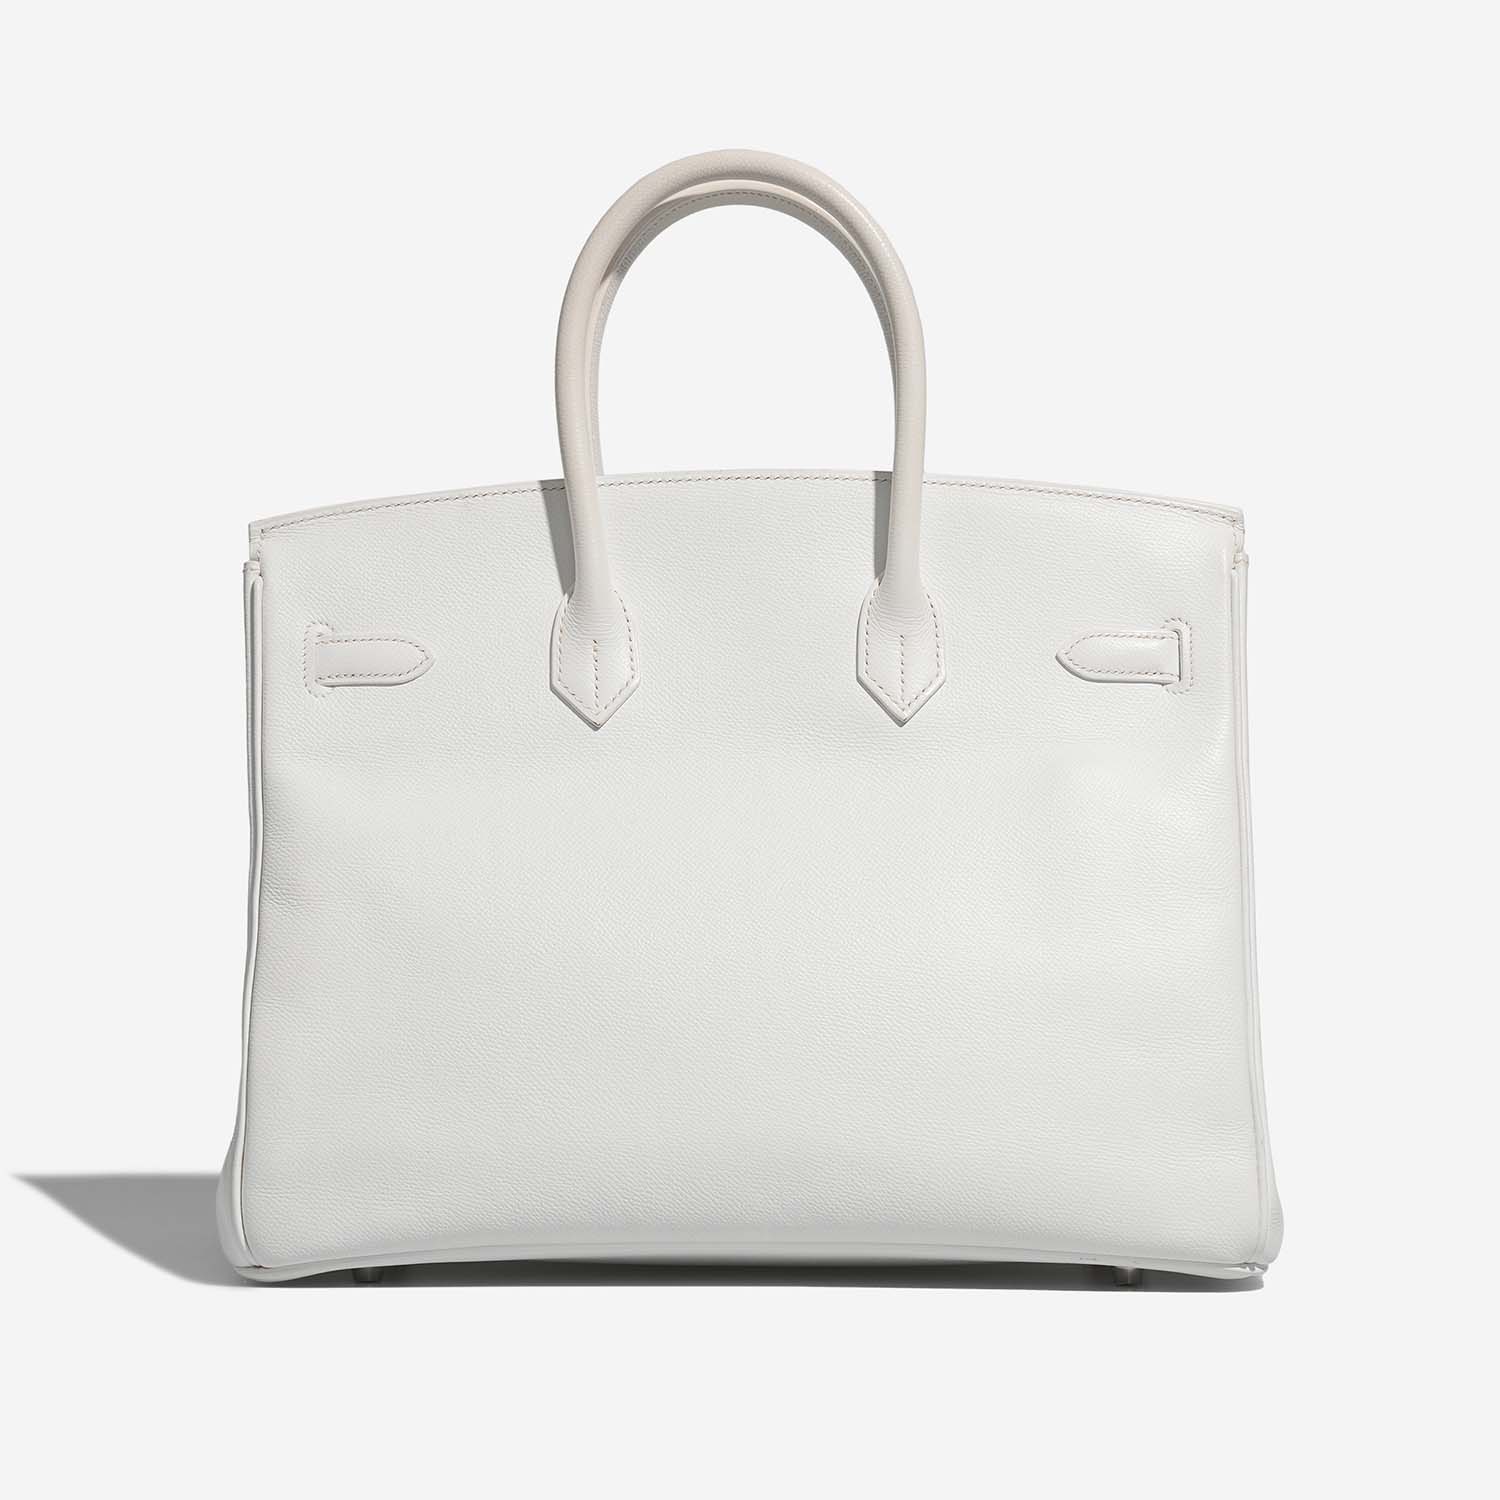 Hermès Birkin 35 White Back | Verkaufen Sie Ihre Designertasche auf Saclab.com